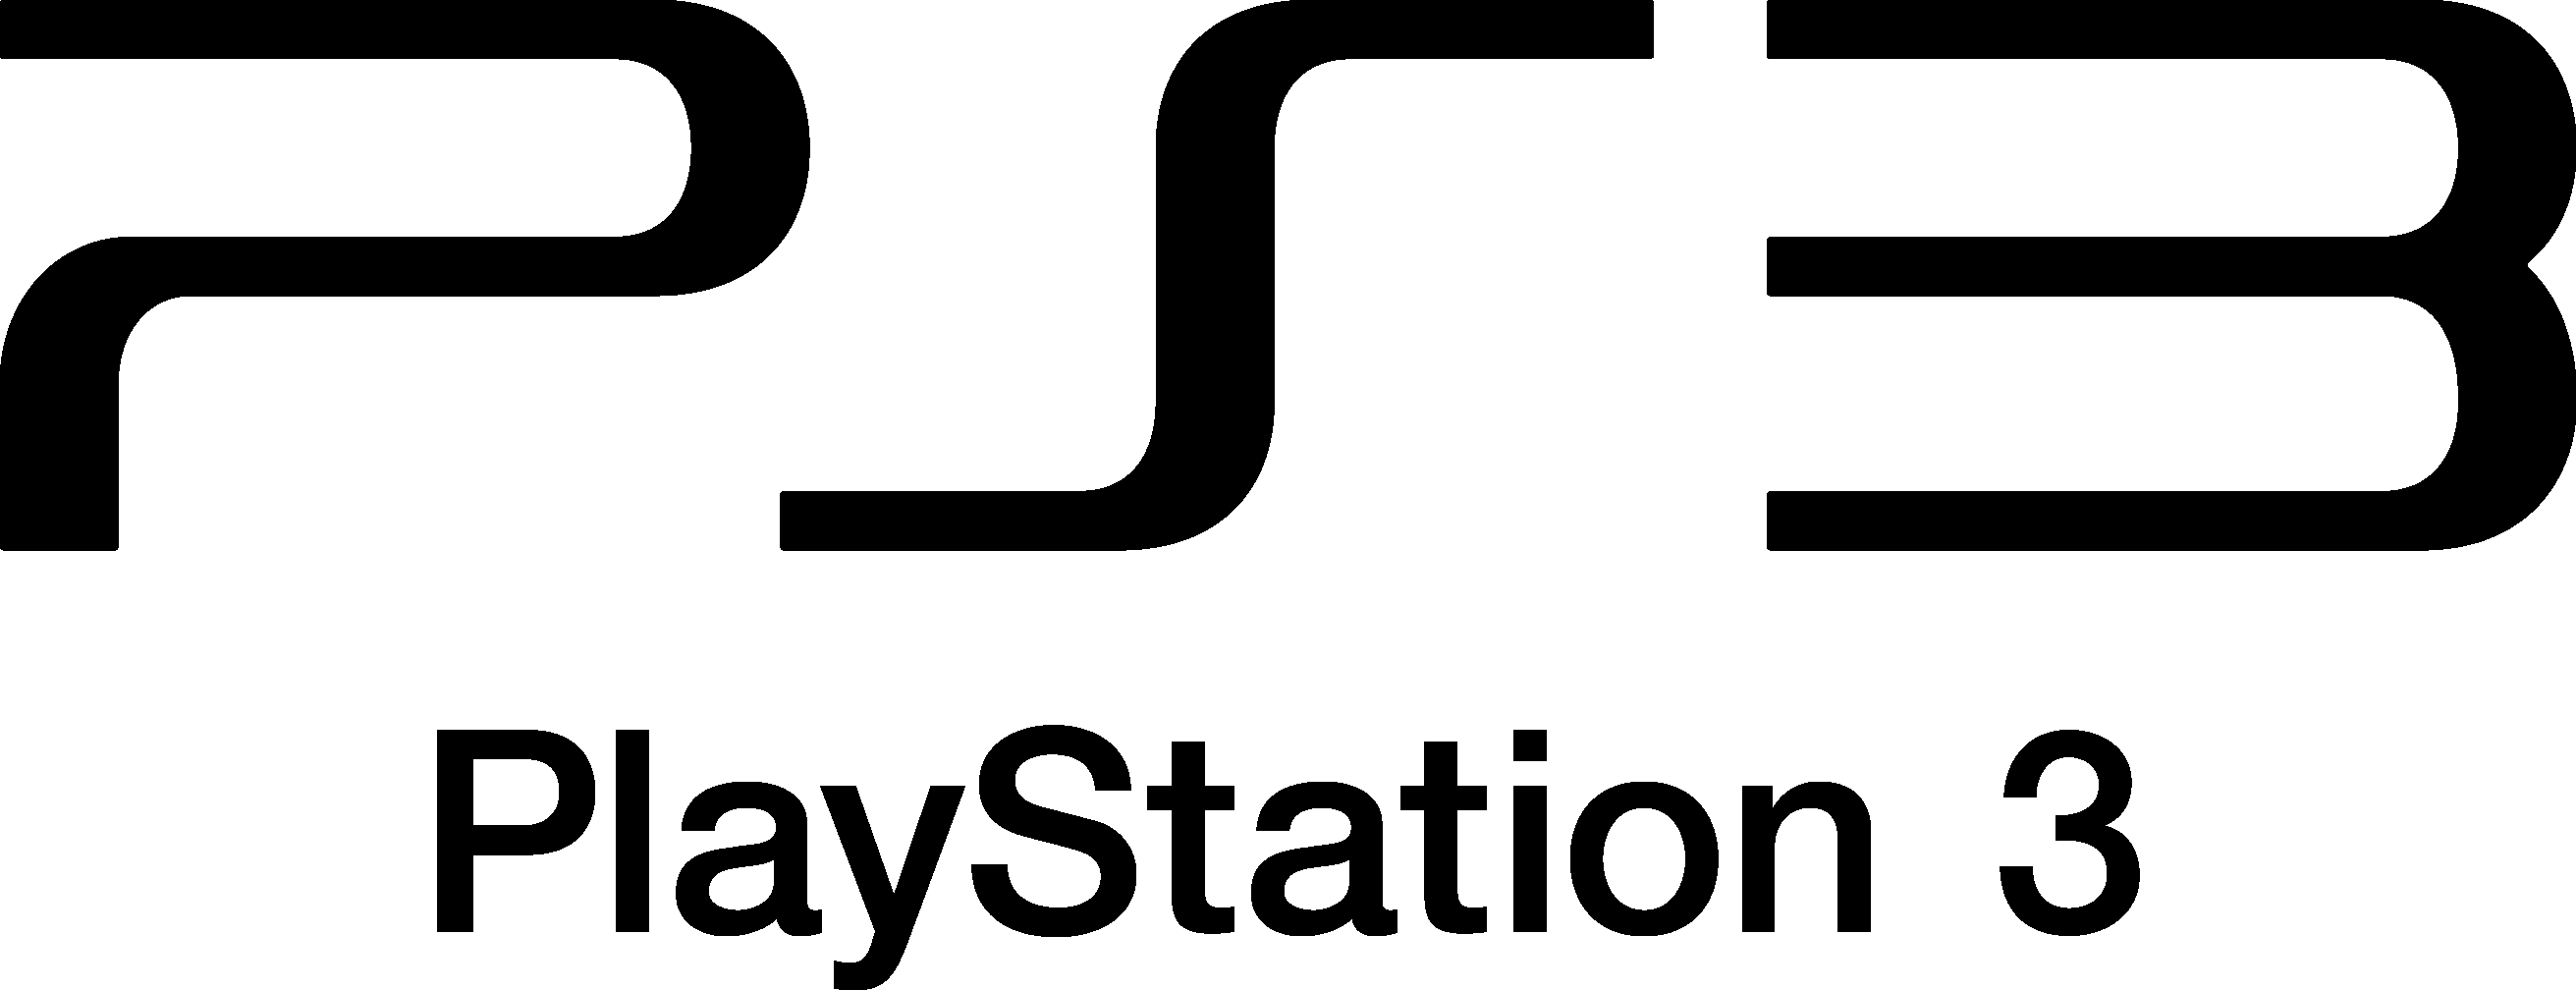 PS3 Logo – PlayStation 3